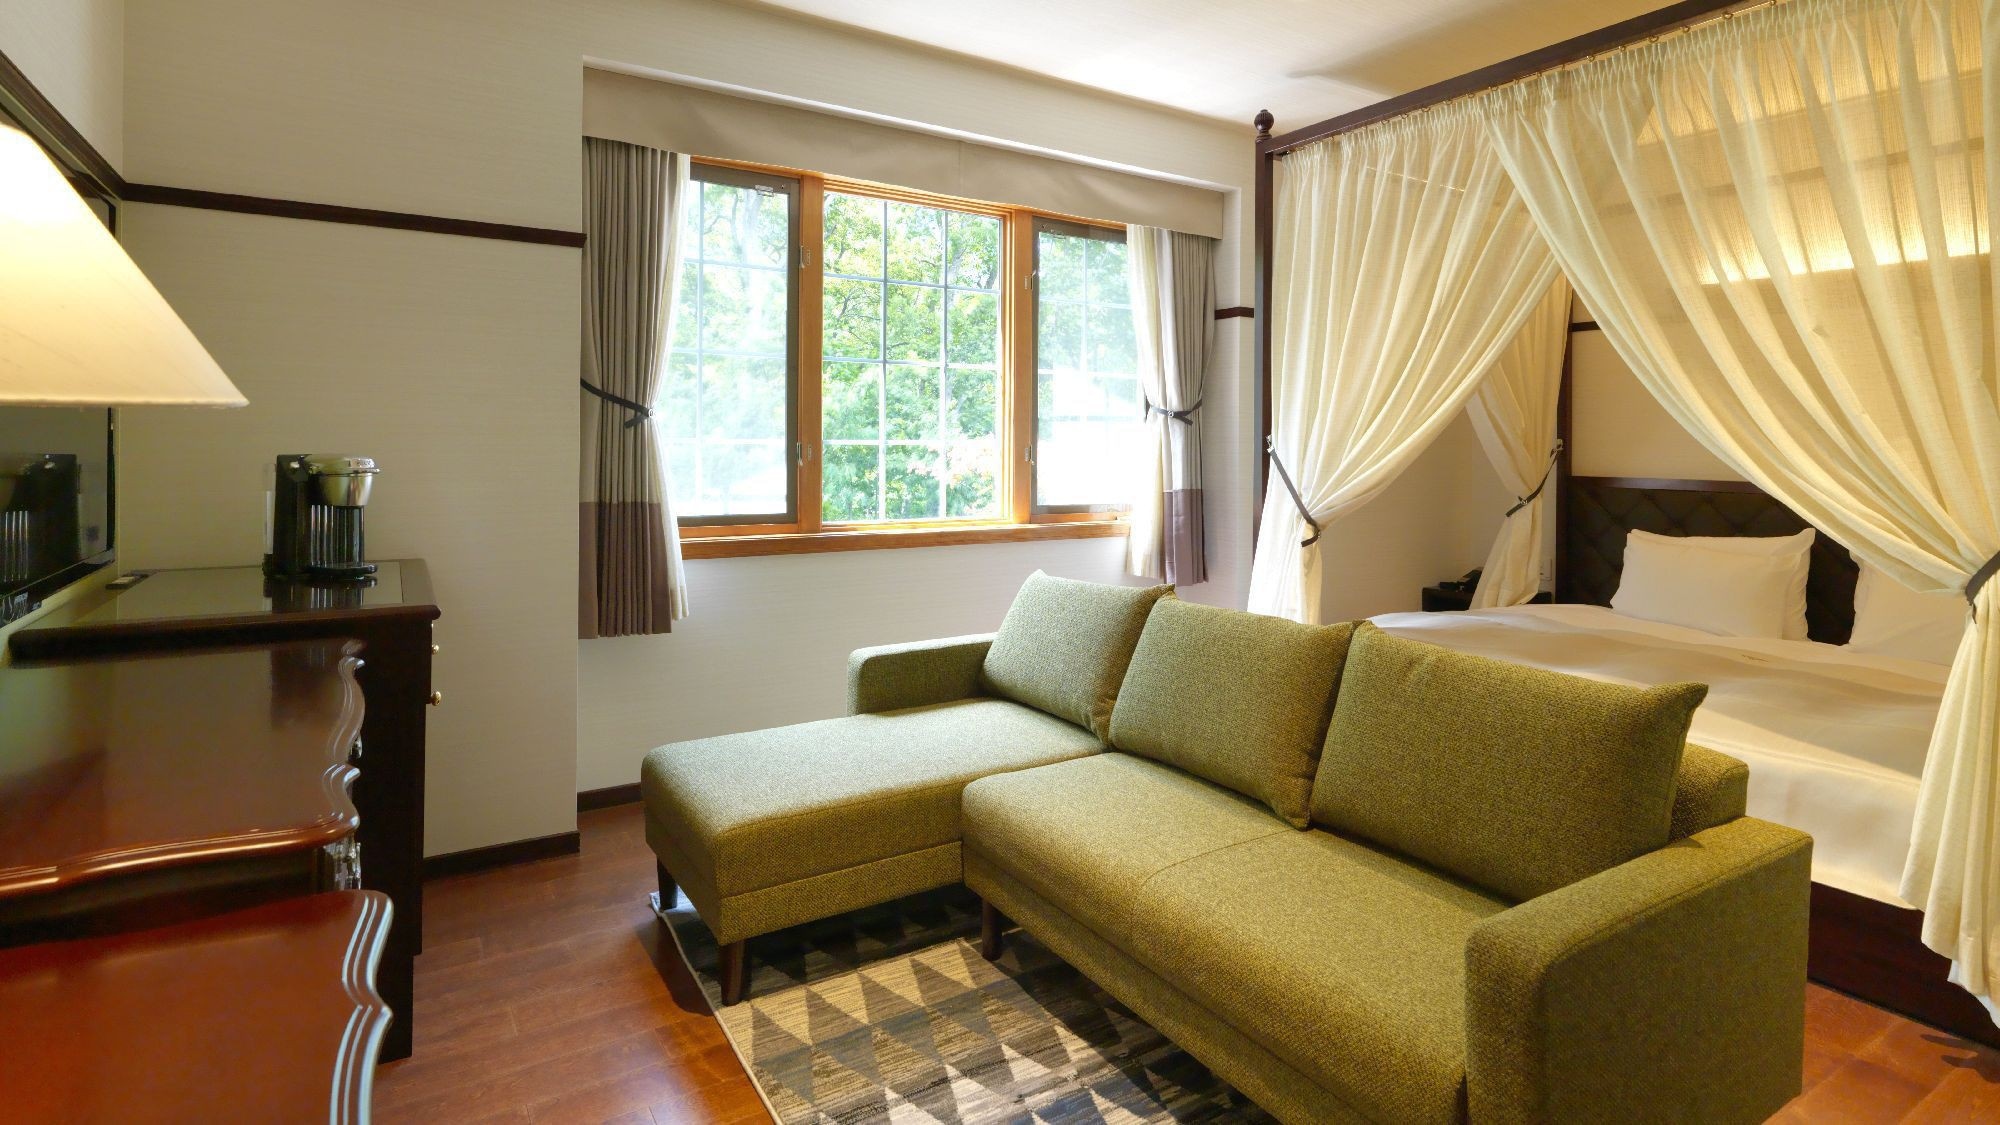 Kamar tidur ganda / Kamar tidur ganda direkomendasikan untuk pasangan dan pasangan (contoh kamar tamu)